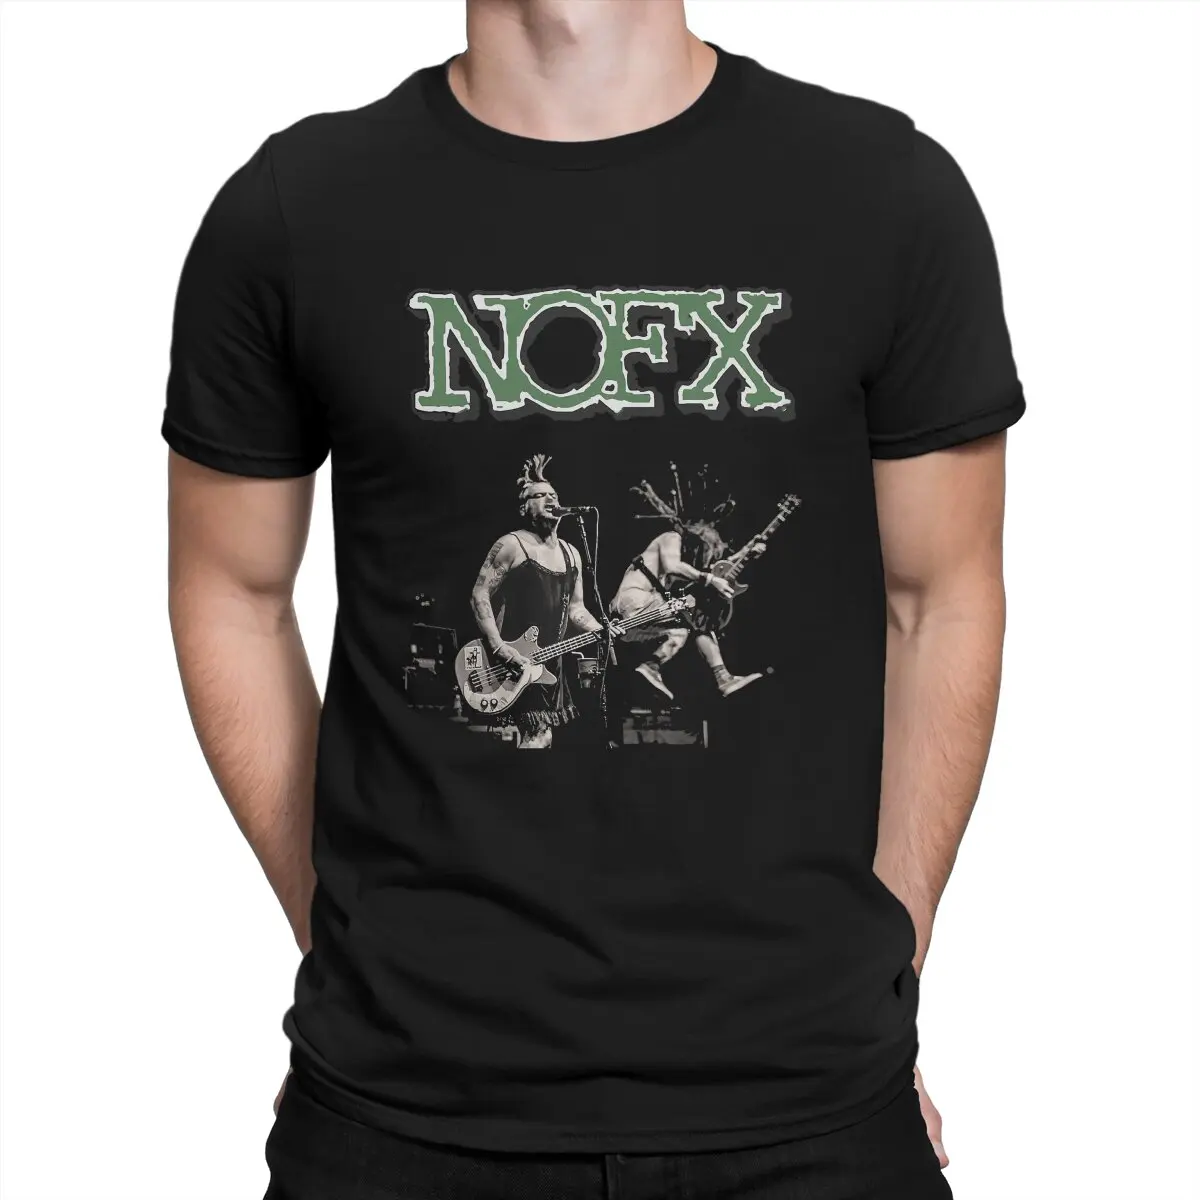 

Футболка NOFX мужская с круглым вырезом, тенниска из 100% хлопка с короткими рукавами, с юмором, идея для подарка, в стиле панк-концерта